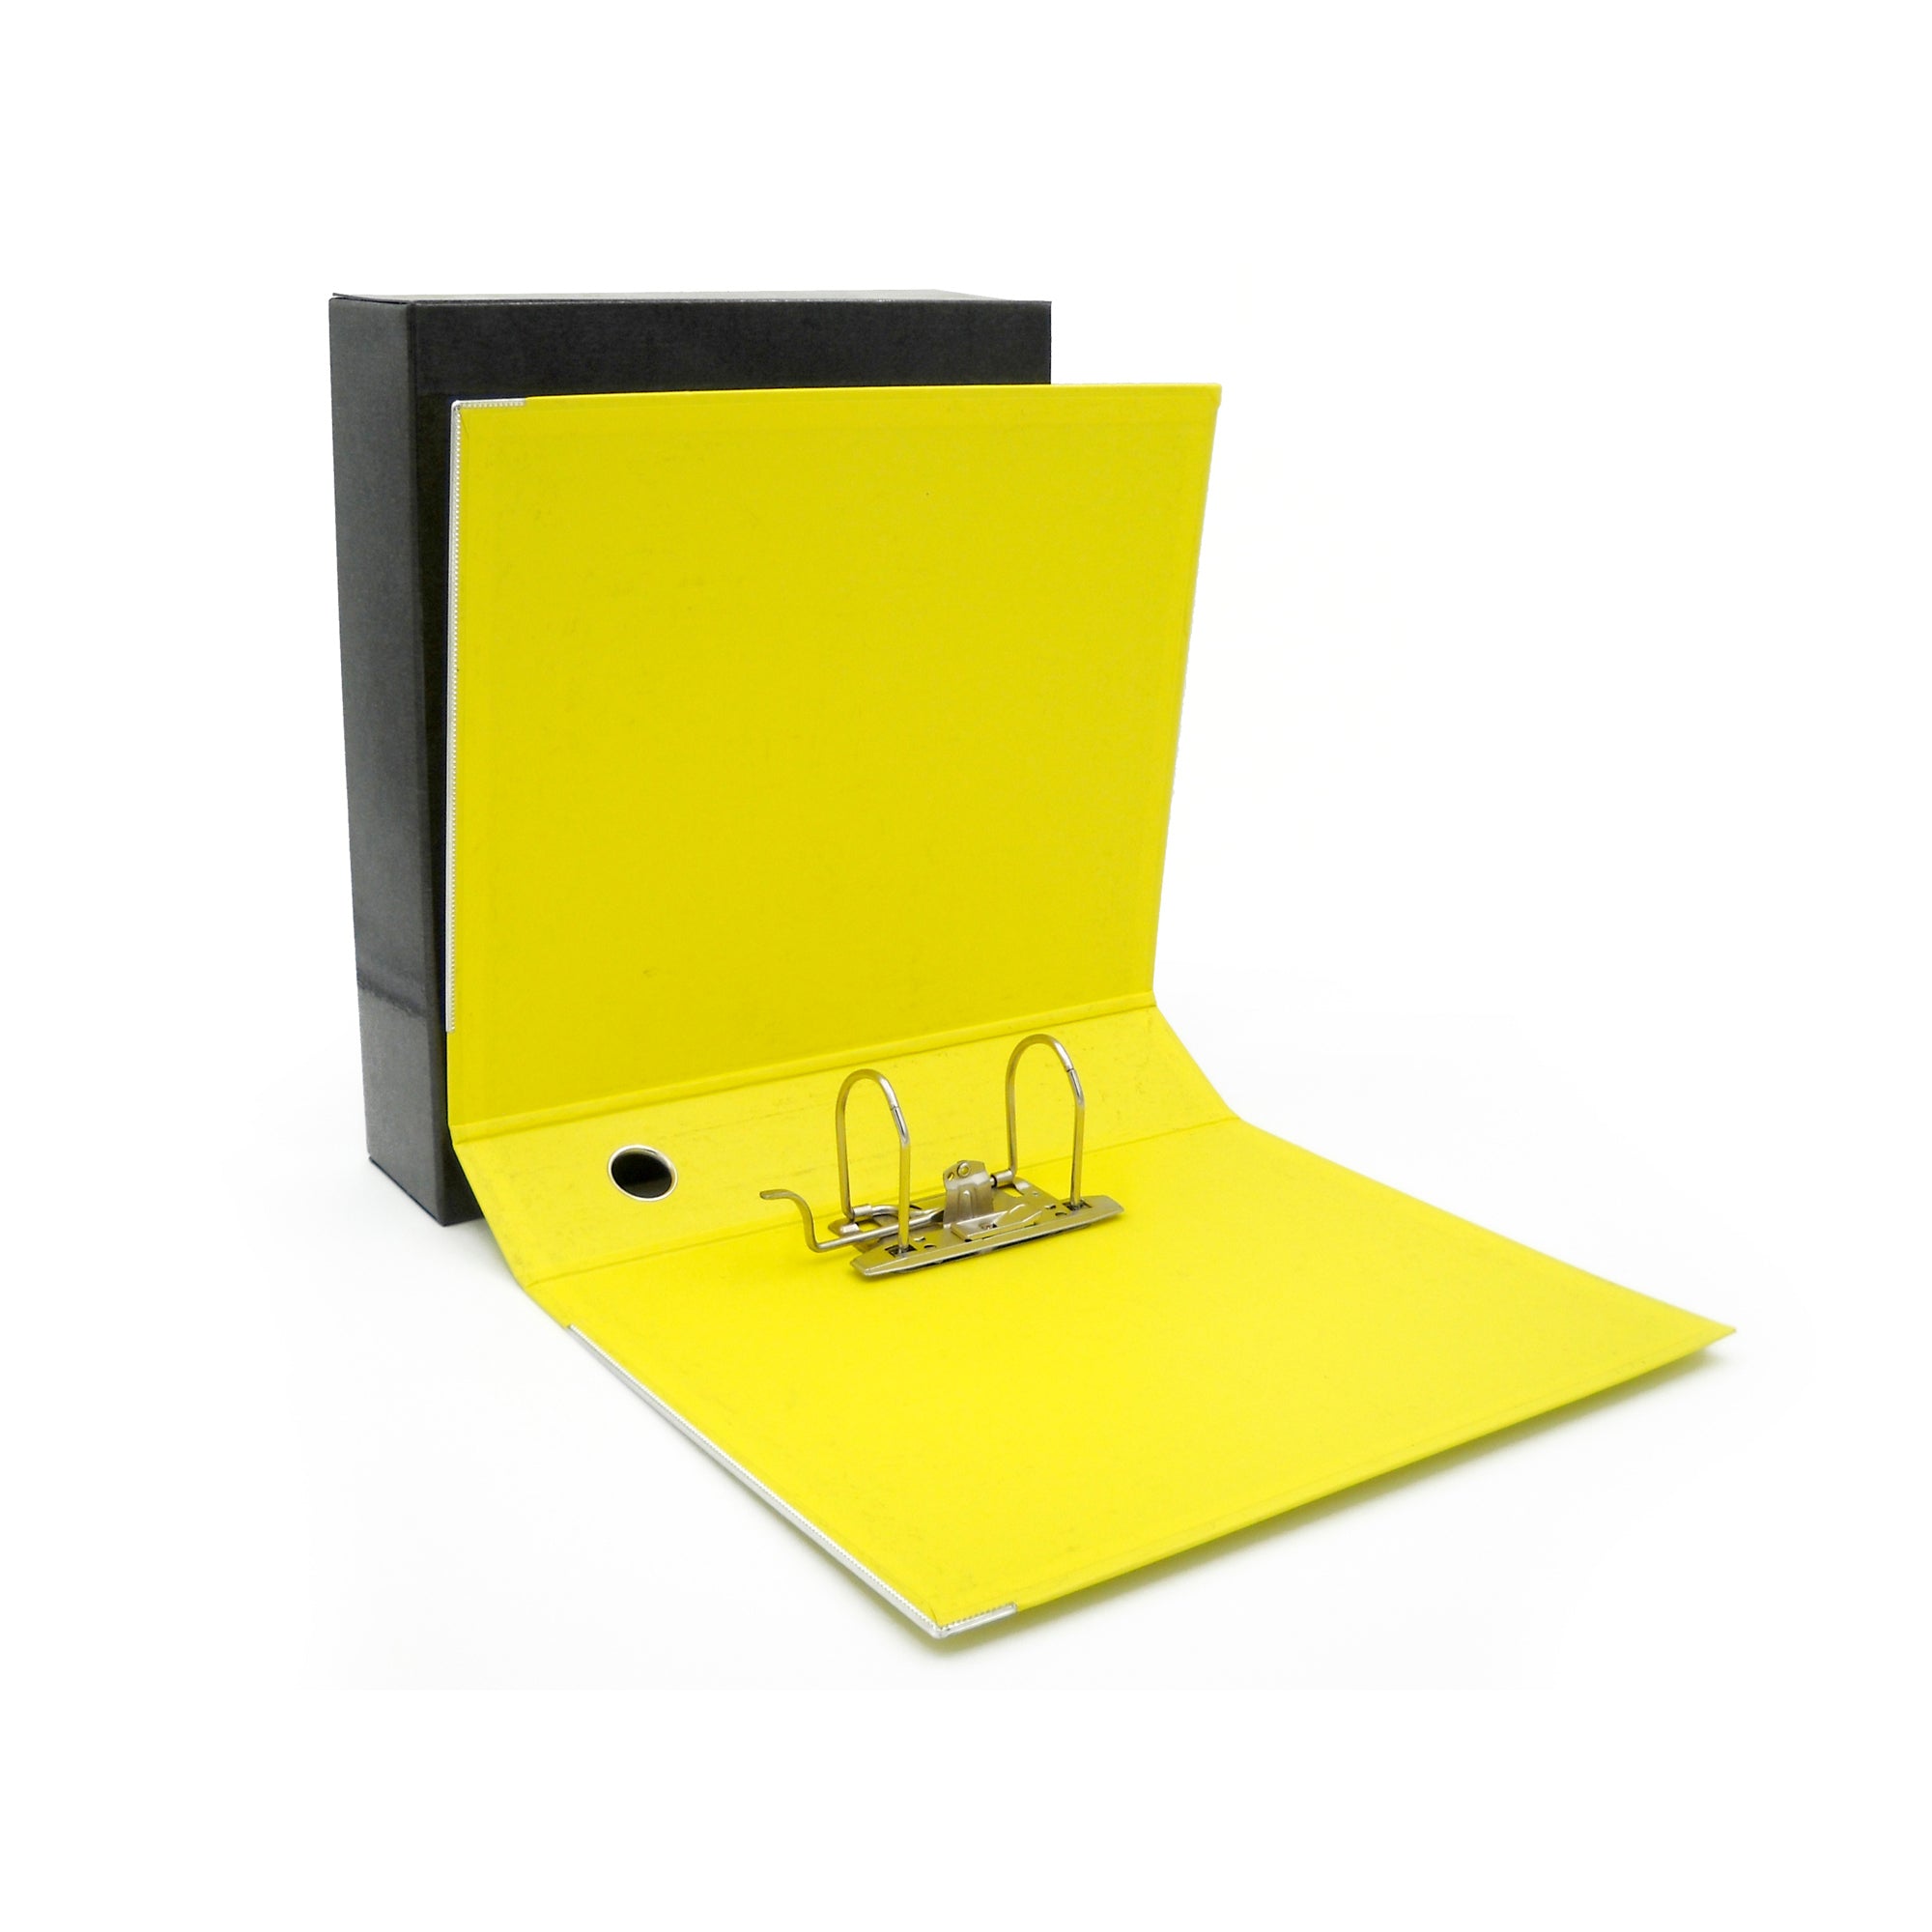 starline-registratore-kingbox-f-to-protocollo-dorso-8cm-giallo